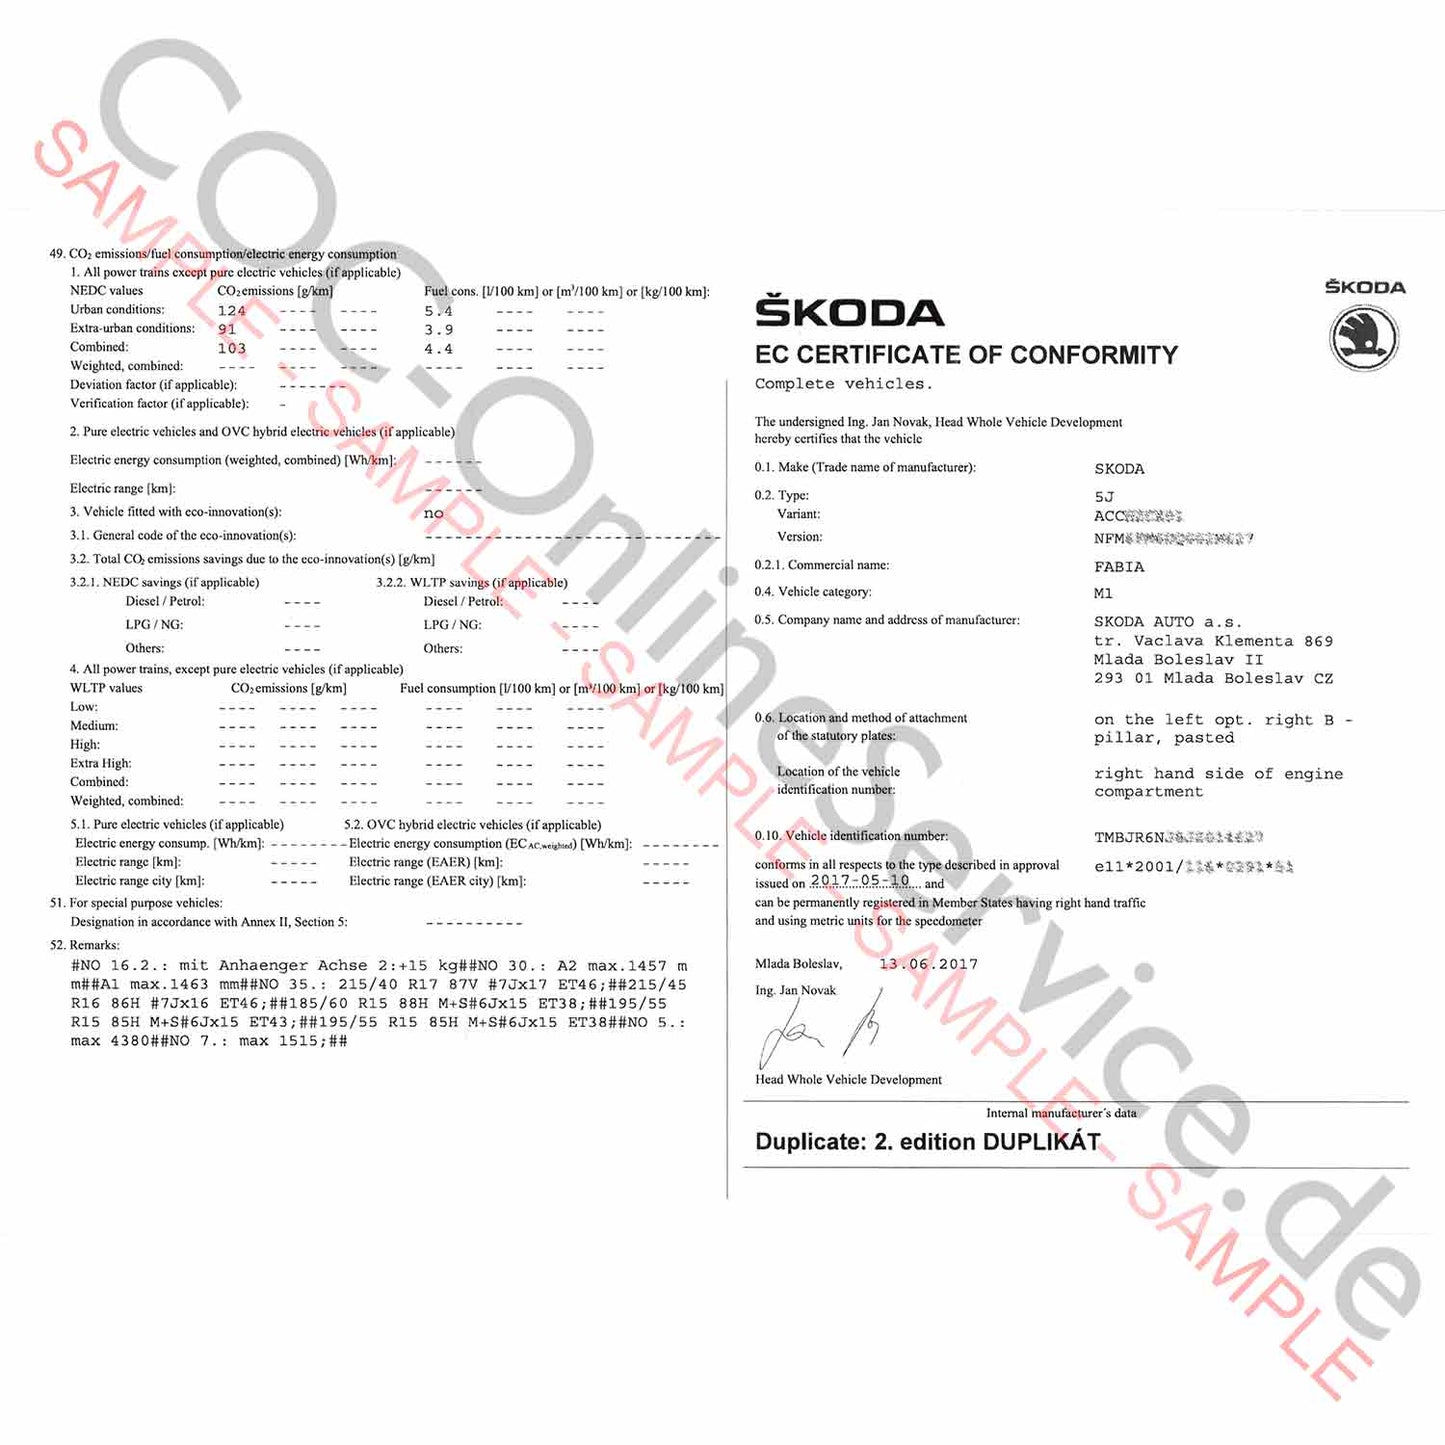 Dokument COC dla Skoda (Certyfikat zgodności)